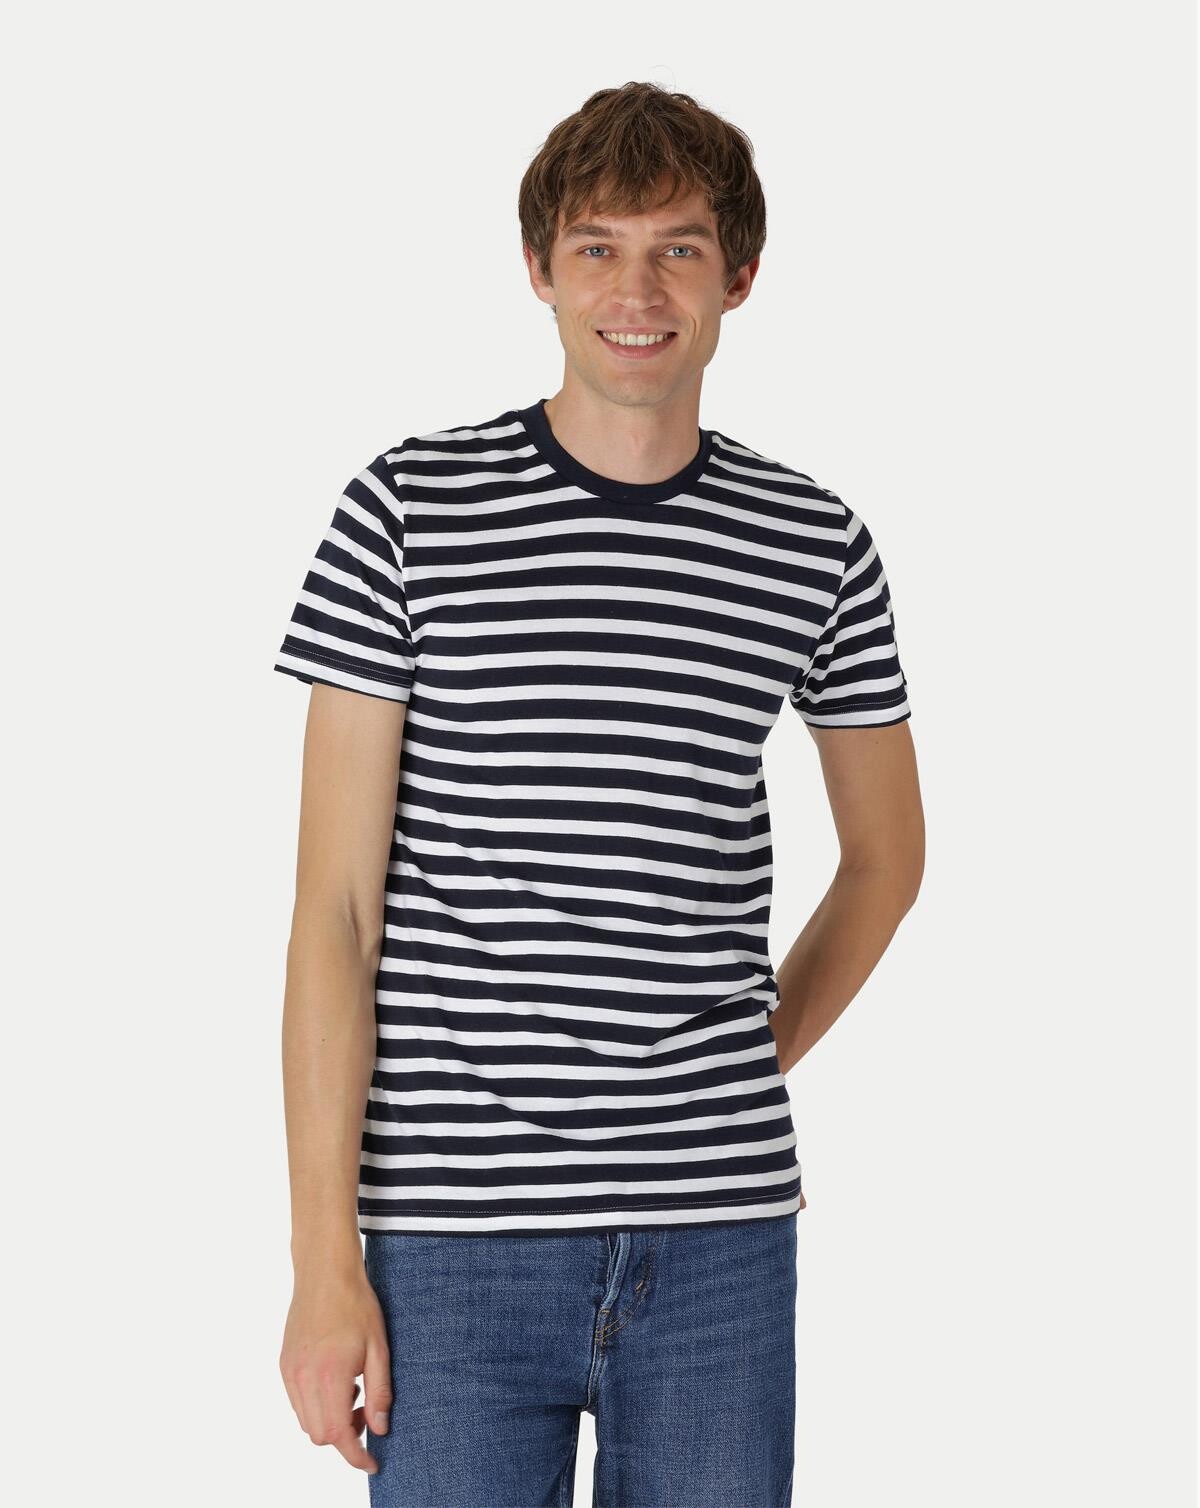 Neutral Økologisk T-shirt til - Tætsiddende (Blå / Hvid stribet, L)